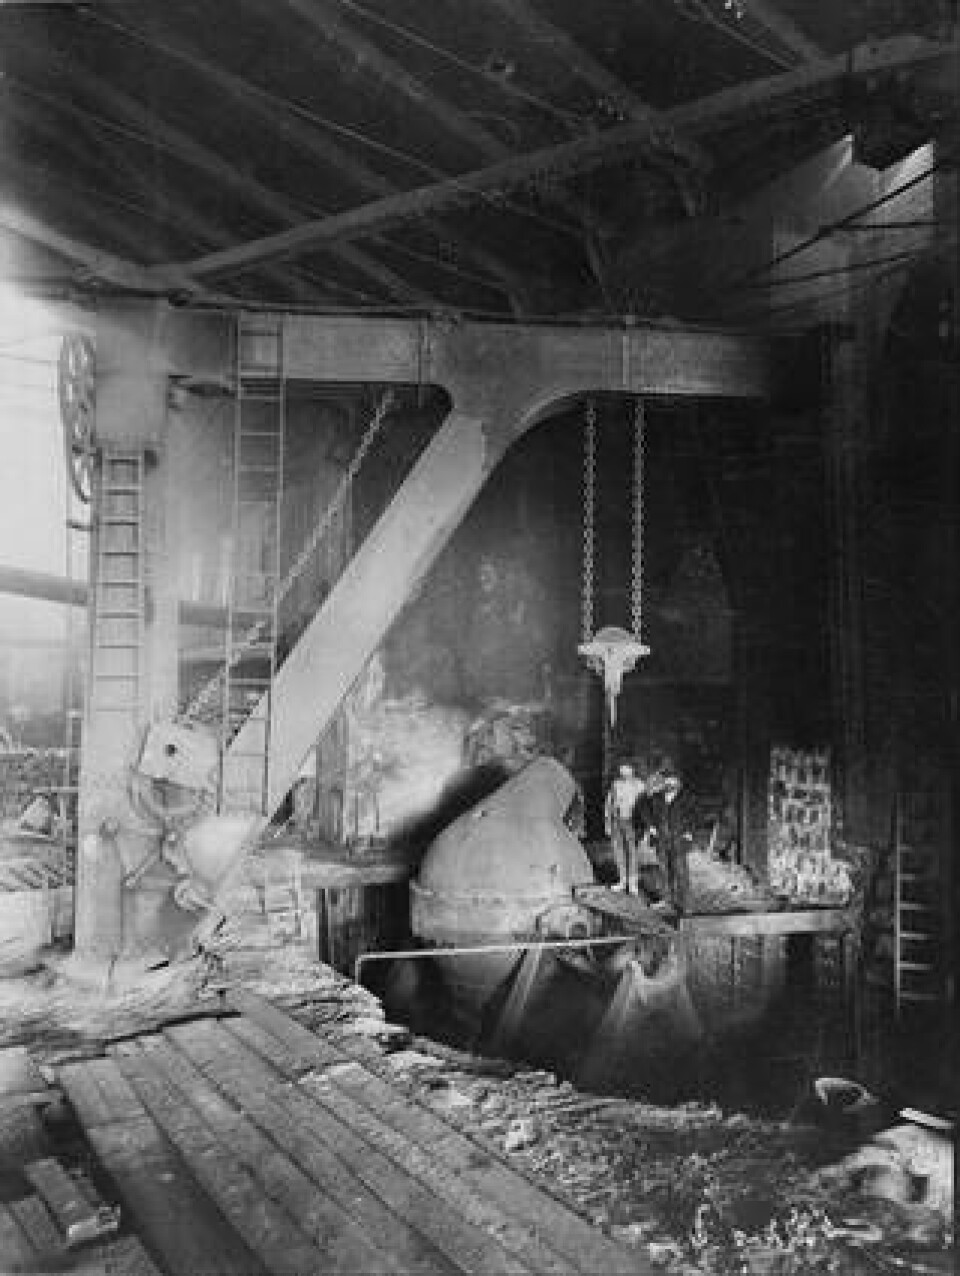 När bessemerprocessen lanserades på 1850-talet gav det den första billiga metoden för storskalig tillverkning av stål. Det högkvalitativa stålet gjorde det möjligt att bygga stabilare ångmaskiner, som inte längre riskerade att explodera. På bilden Sandvikens första bessemerverk, anlagt 1863. Foto: ANDERS OLSSON/TEKNISKA MUSEET